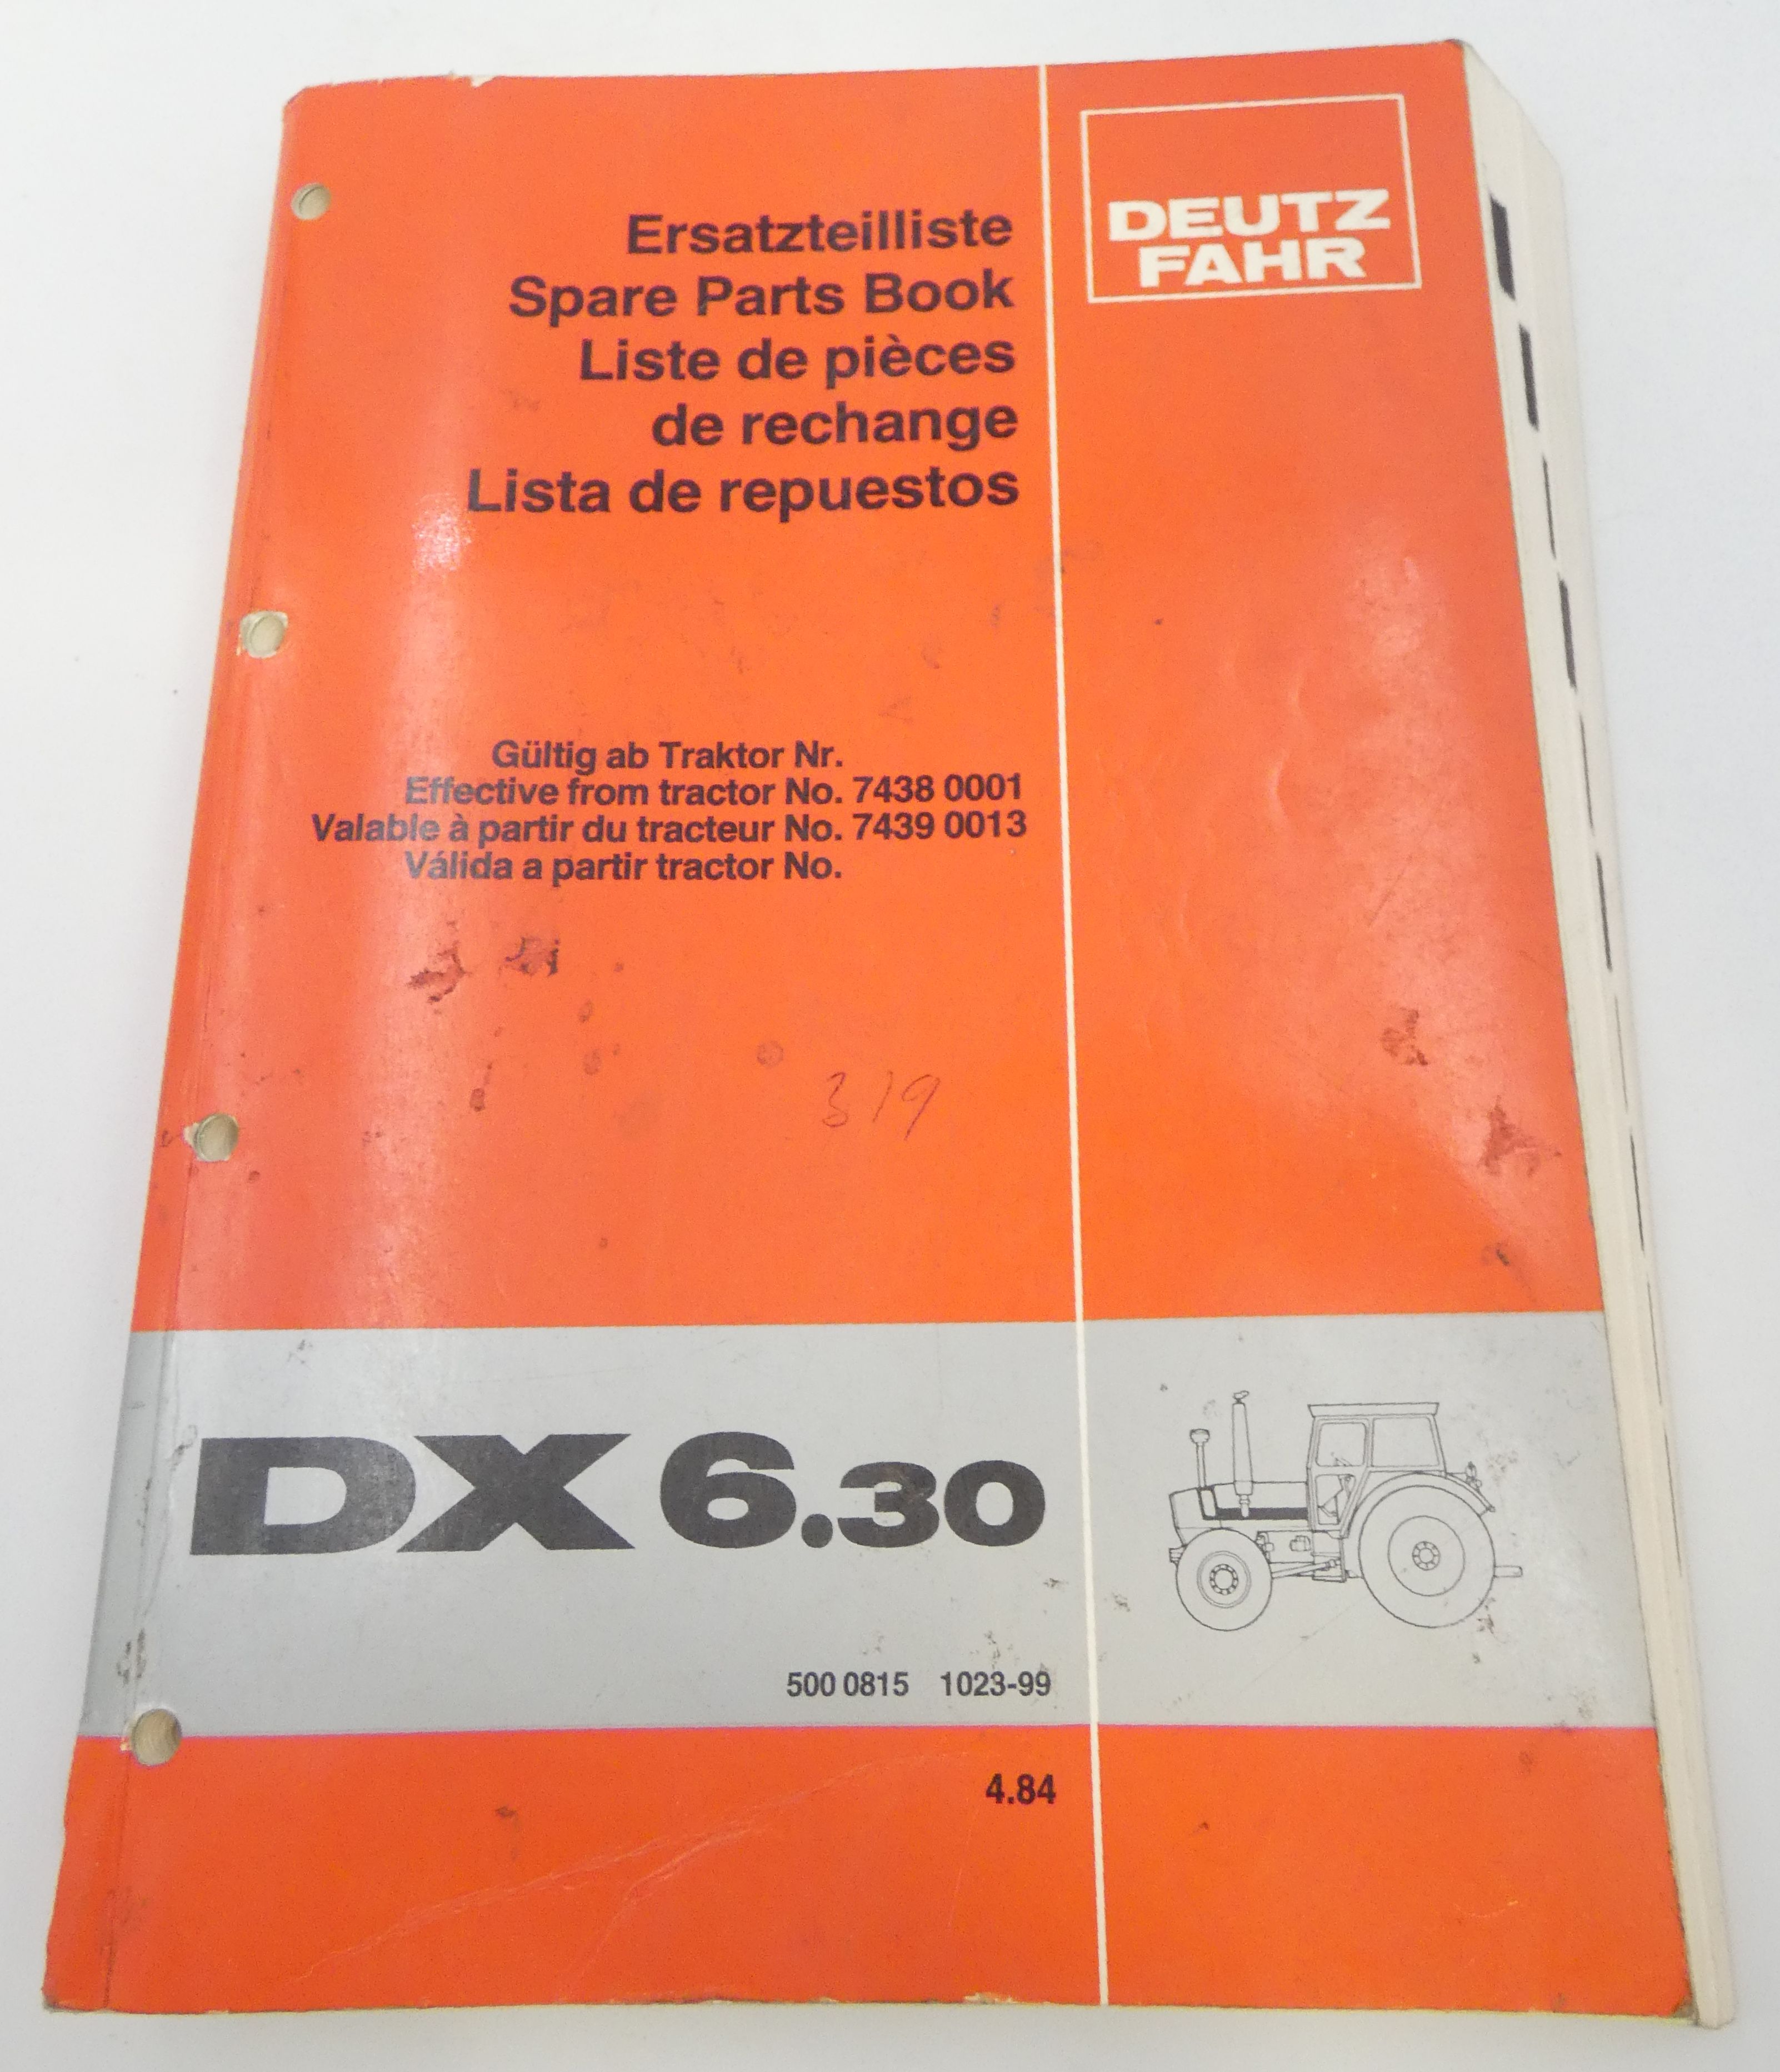 Deutz-Fahr DX6.30 spare parts book